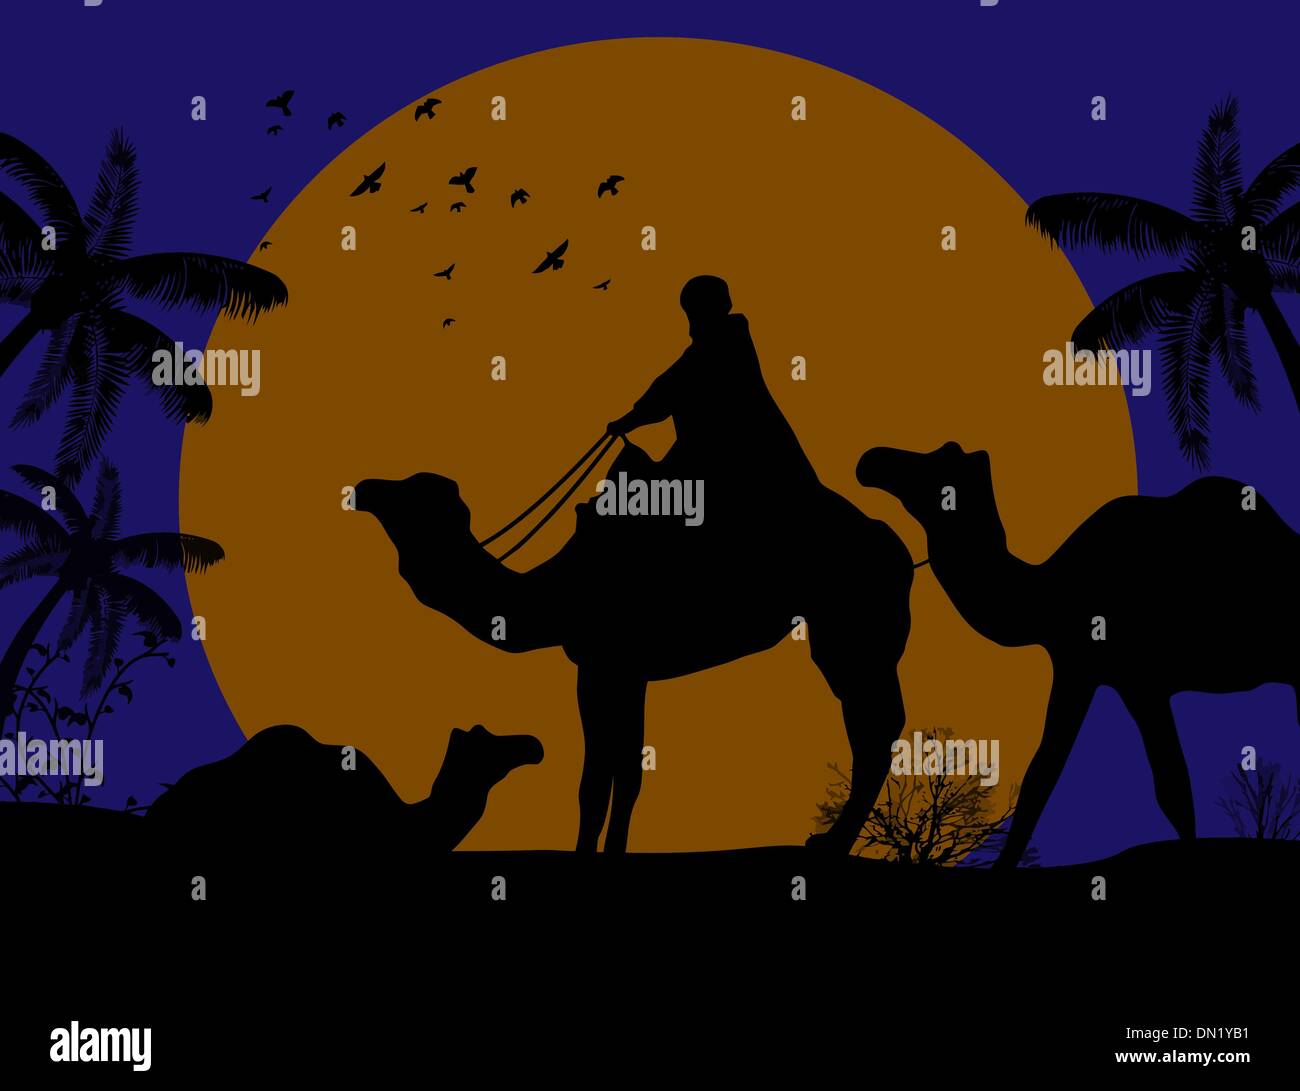 Caravane de chameaux bédouin Illustration de Vecteur